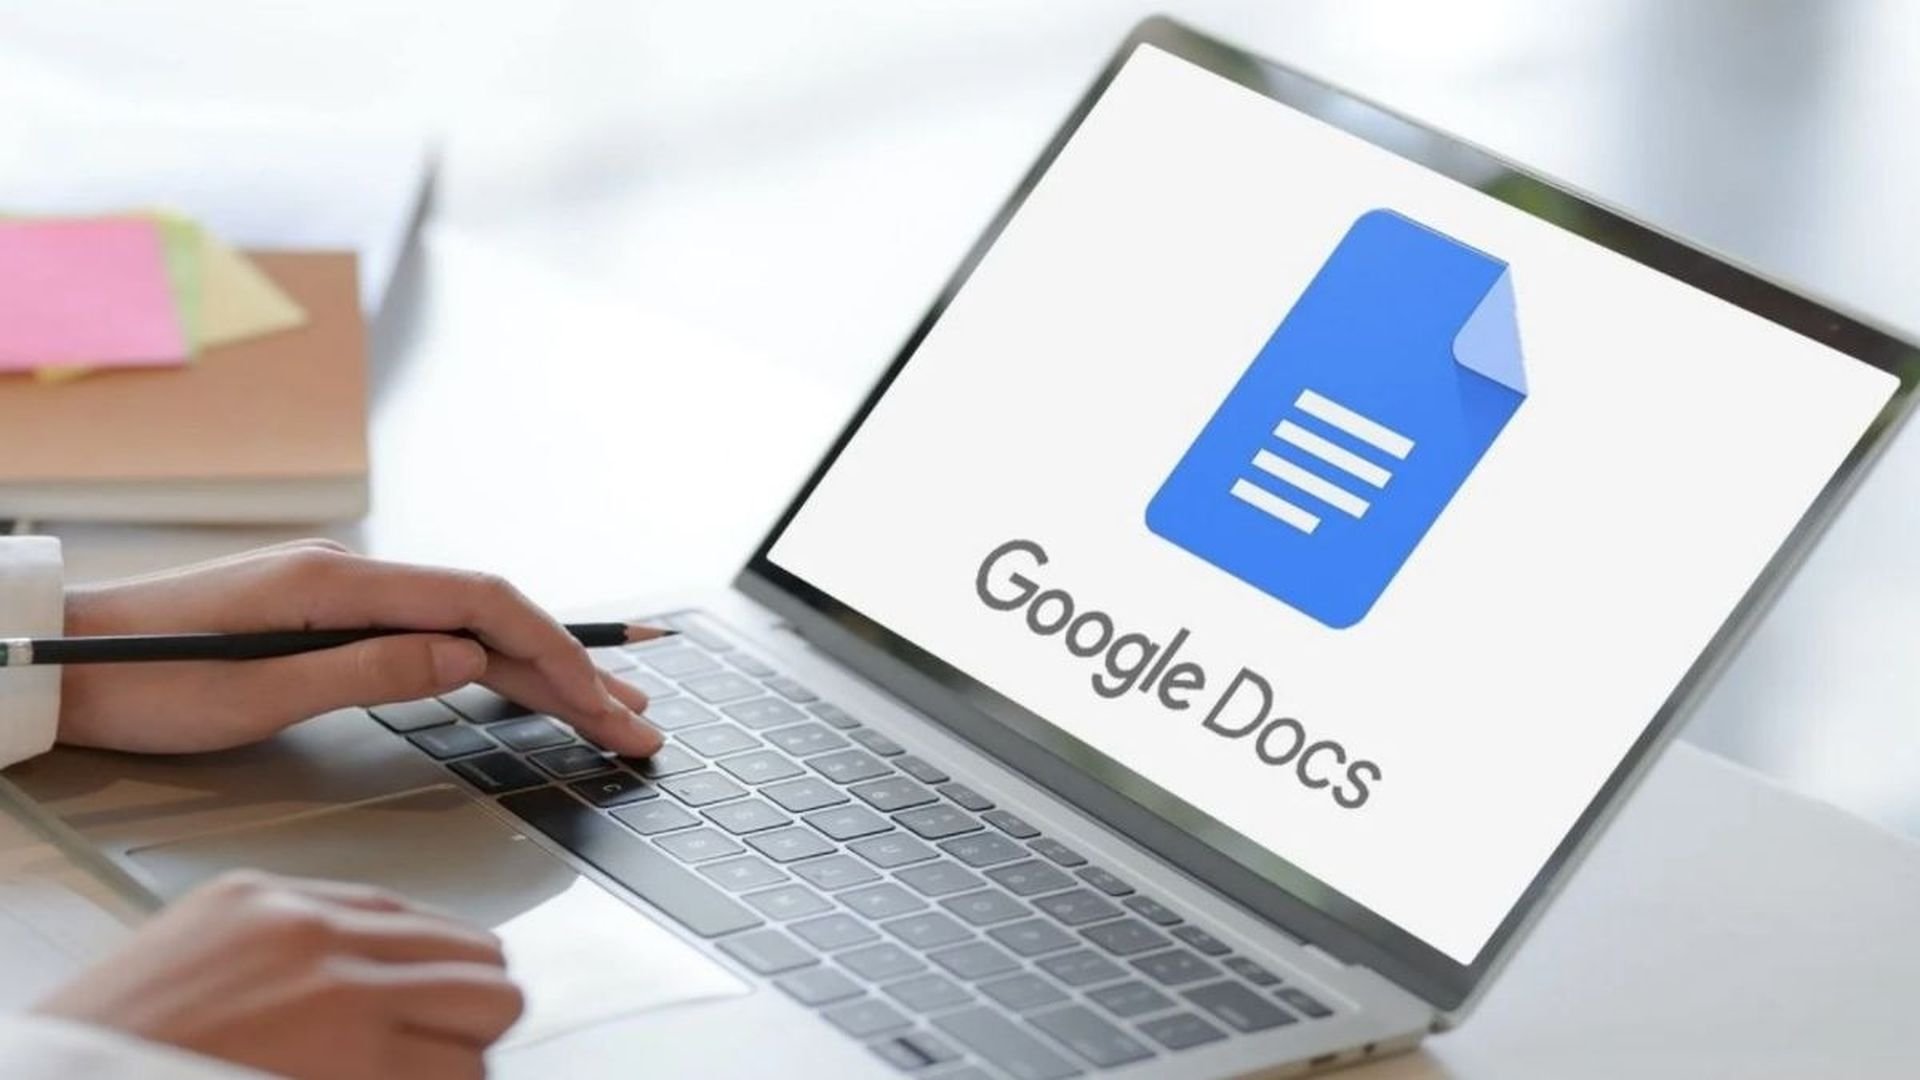 Как сделать подписку в Google Docs?